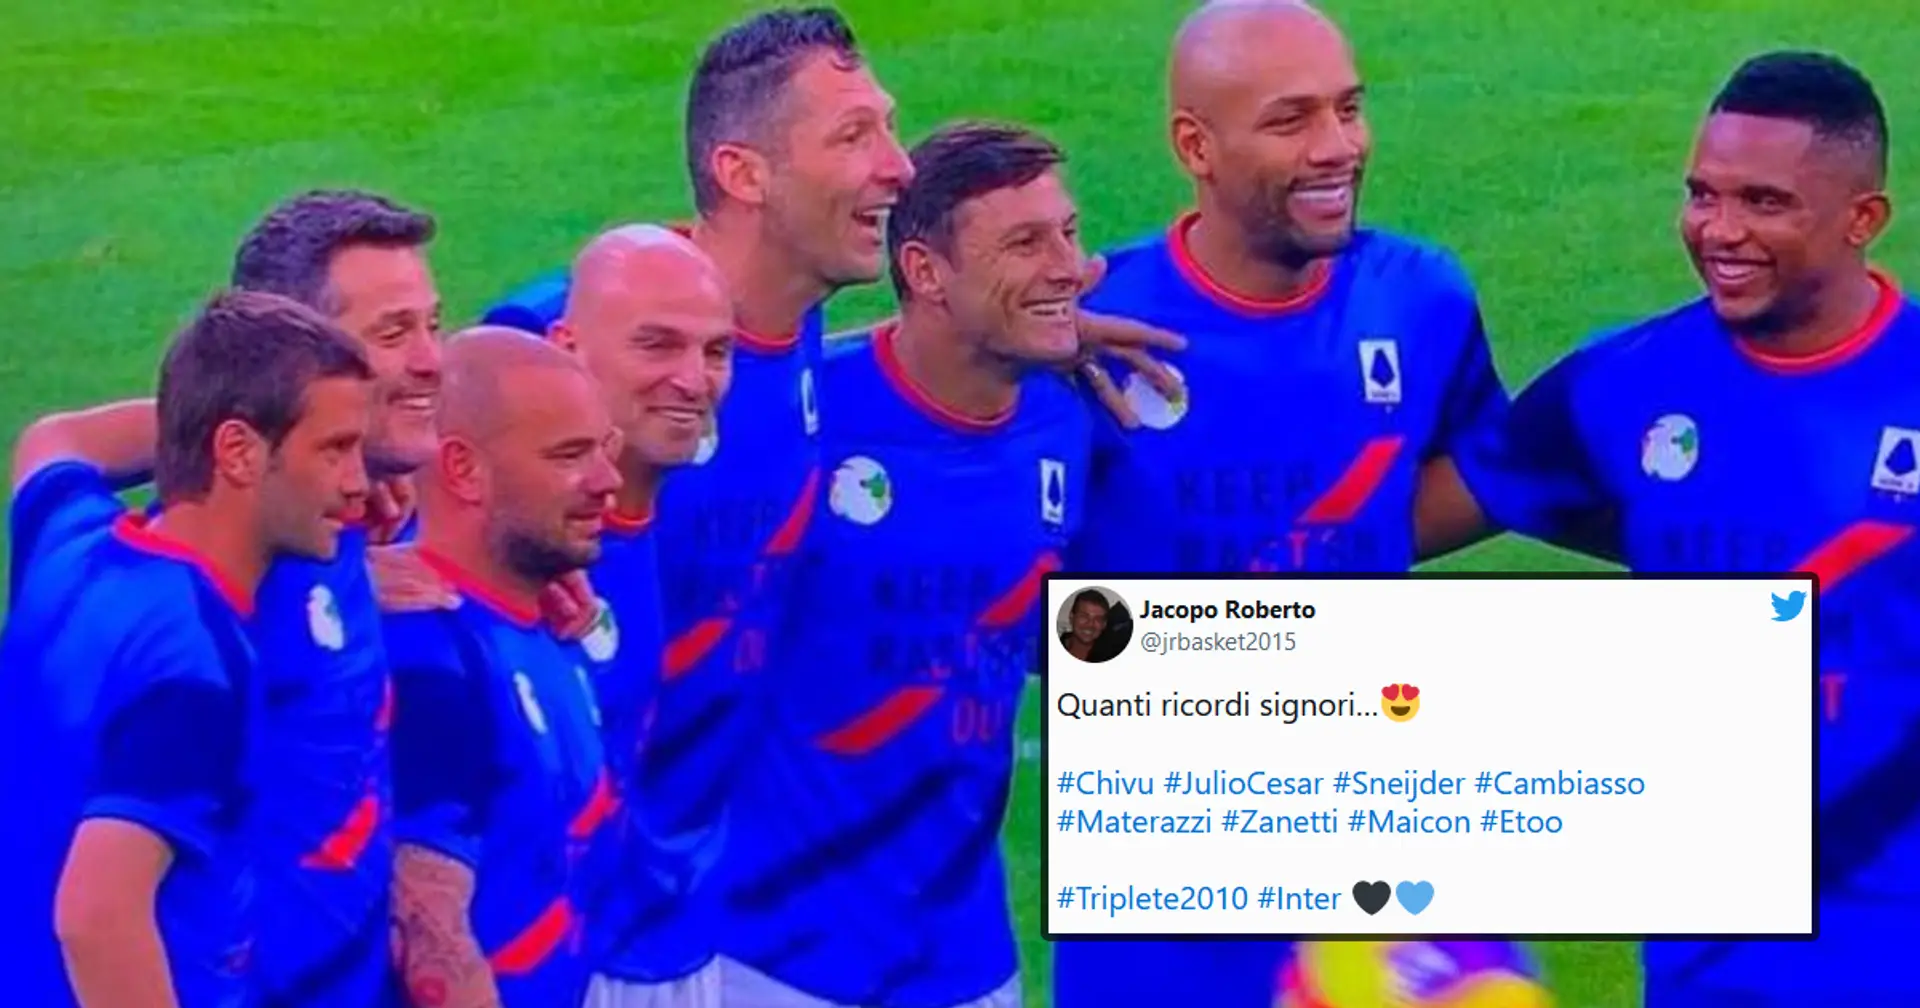 "Fenomeni, che nostalgia": i tifosi dell'Inter ricordano gli Eroi del passato dopo il match di beneficenza a San Siro